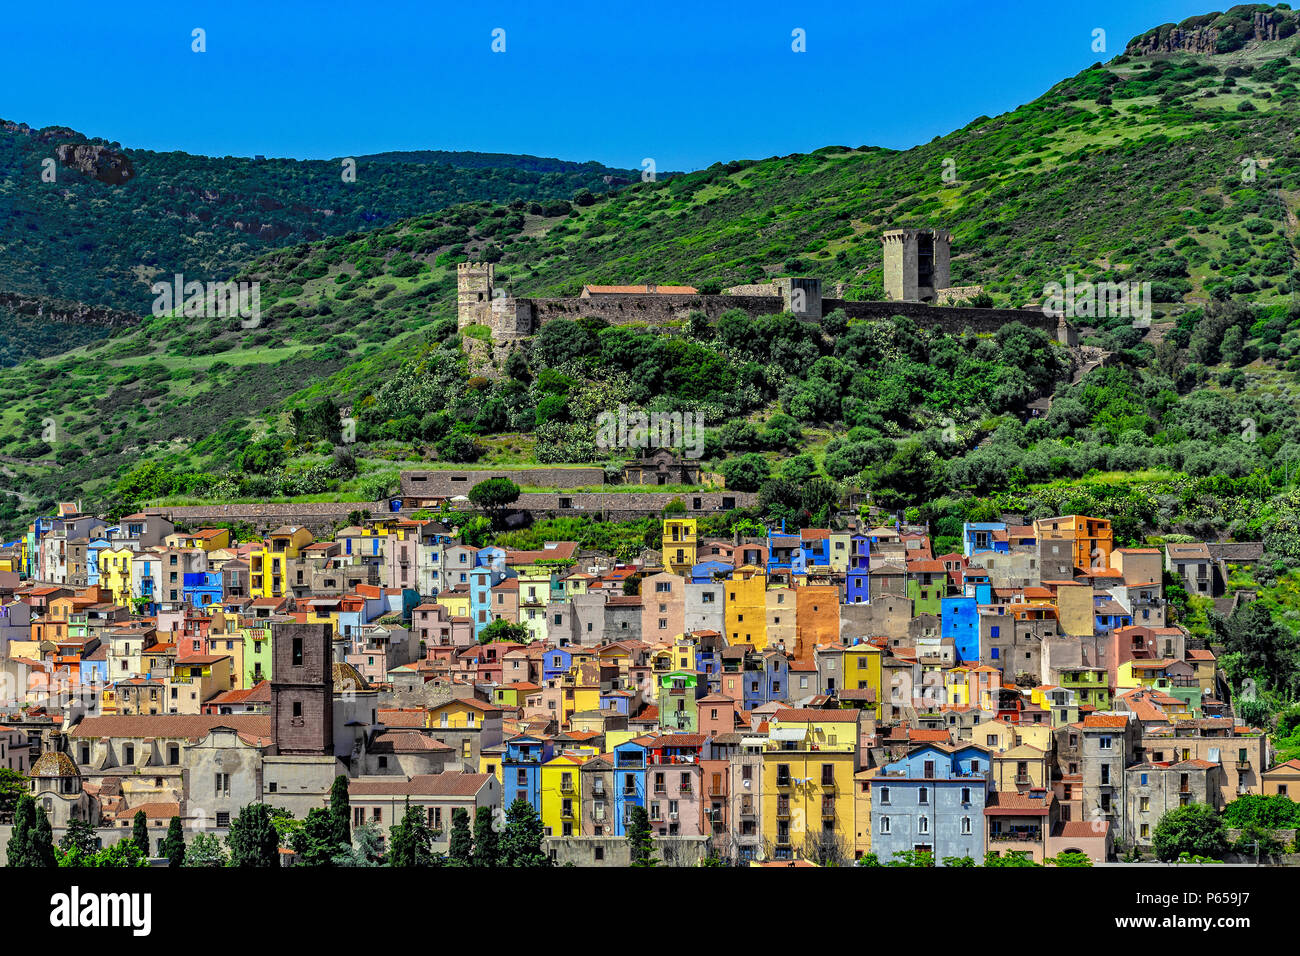 Italien Sardinien Bosa Italien Sardinien Bosa Blick auf die Altstadt mit der Burg der Malaspina Serravalle oder Stockfoto